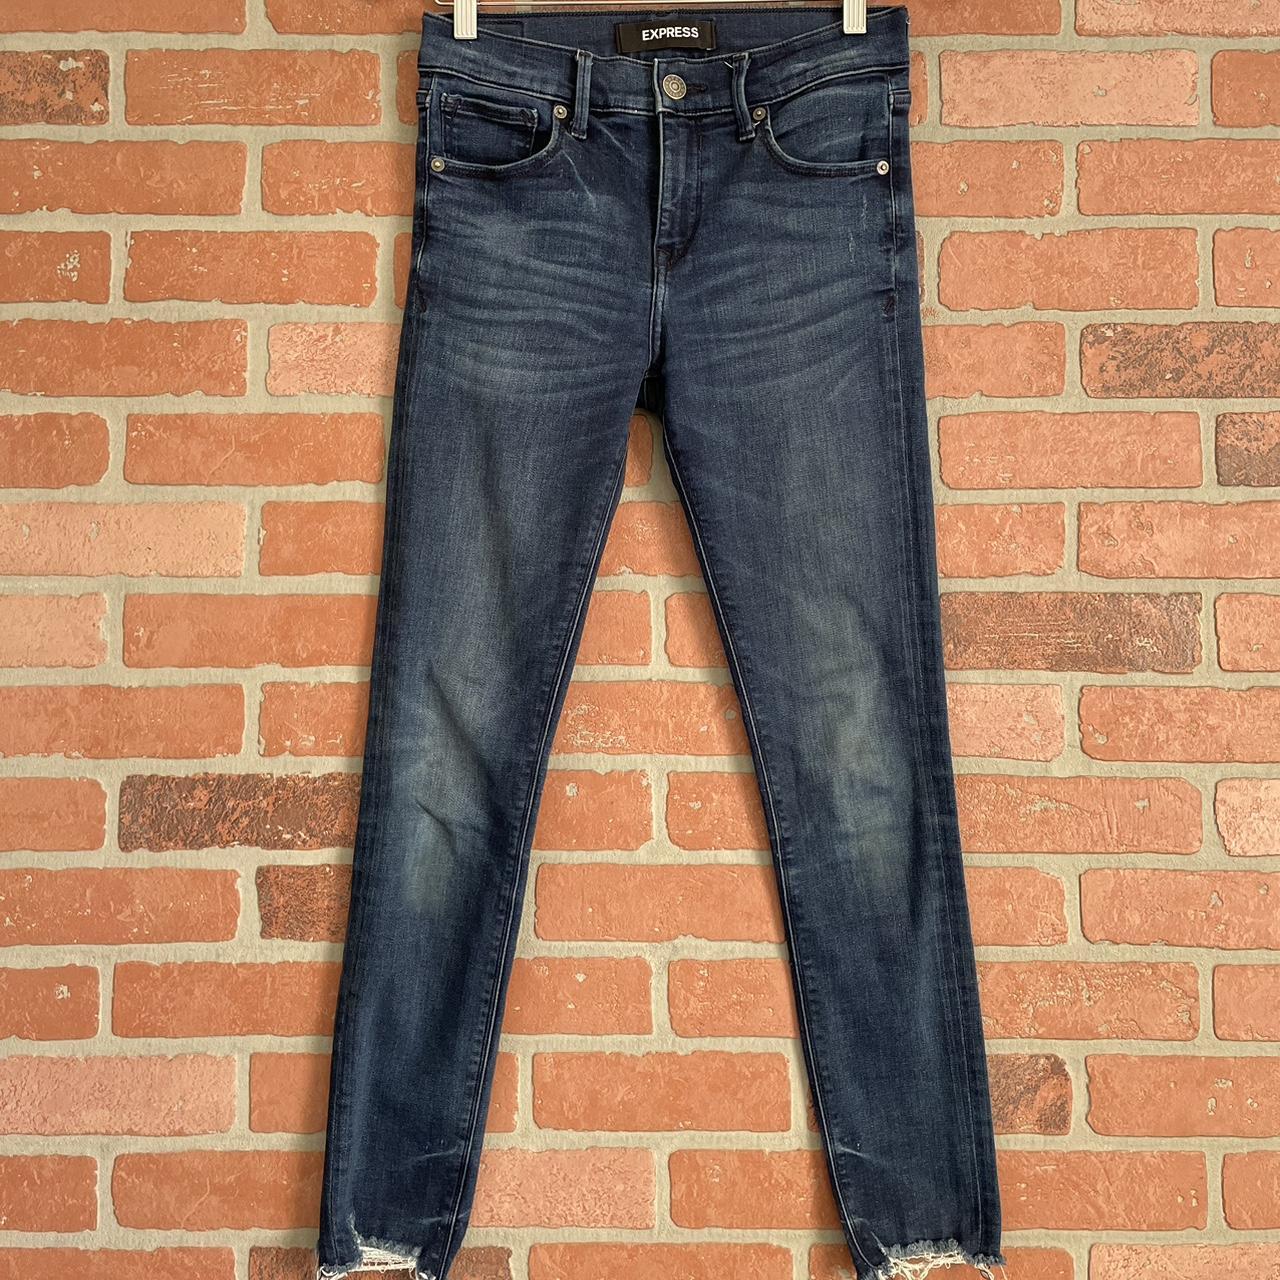 Express skinny jeans Super soft, stretchy denim Size... - Depop